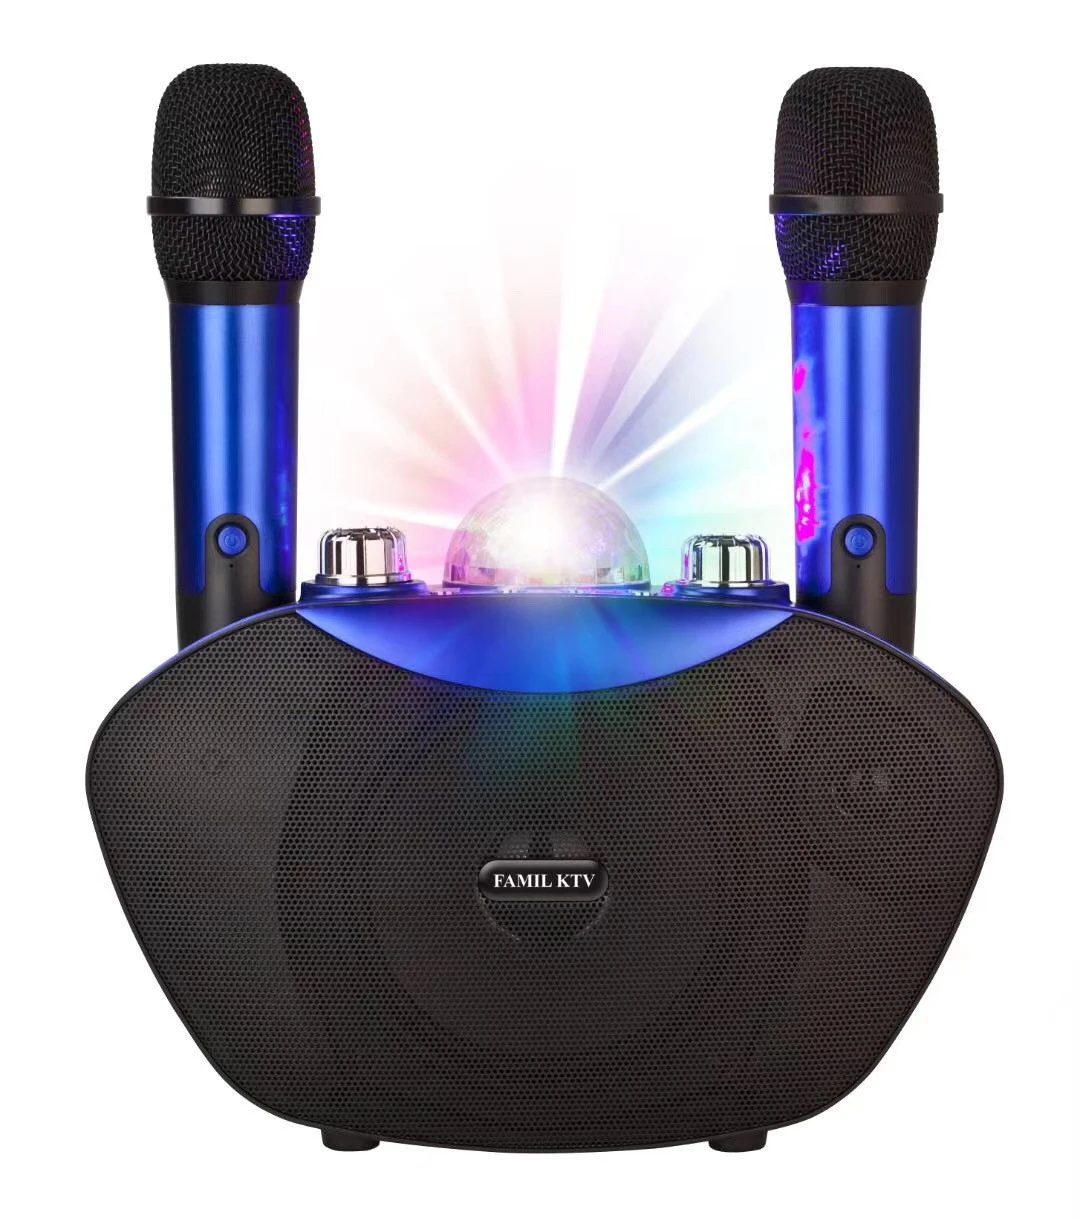 For girls for home theatre system family KTV karaoke multimedia portable wireless microphone karaoke speaker